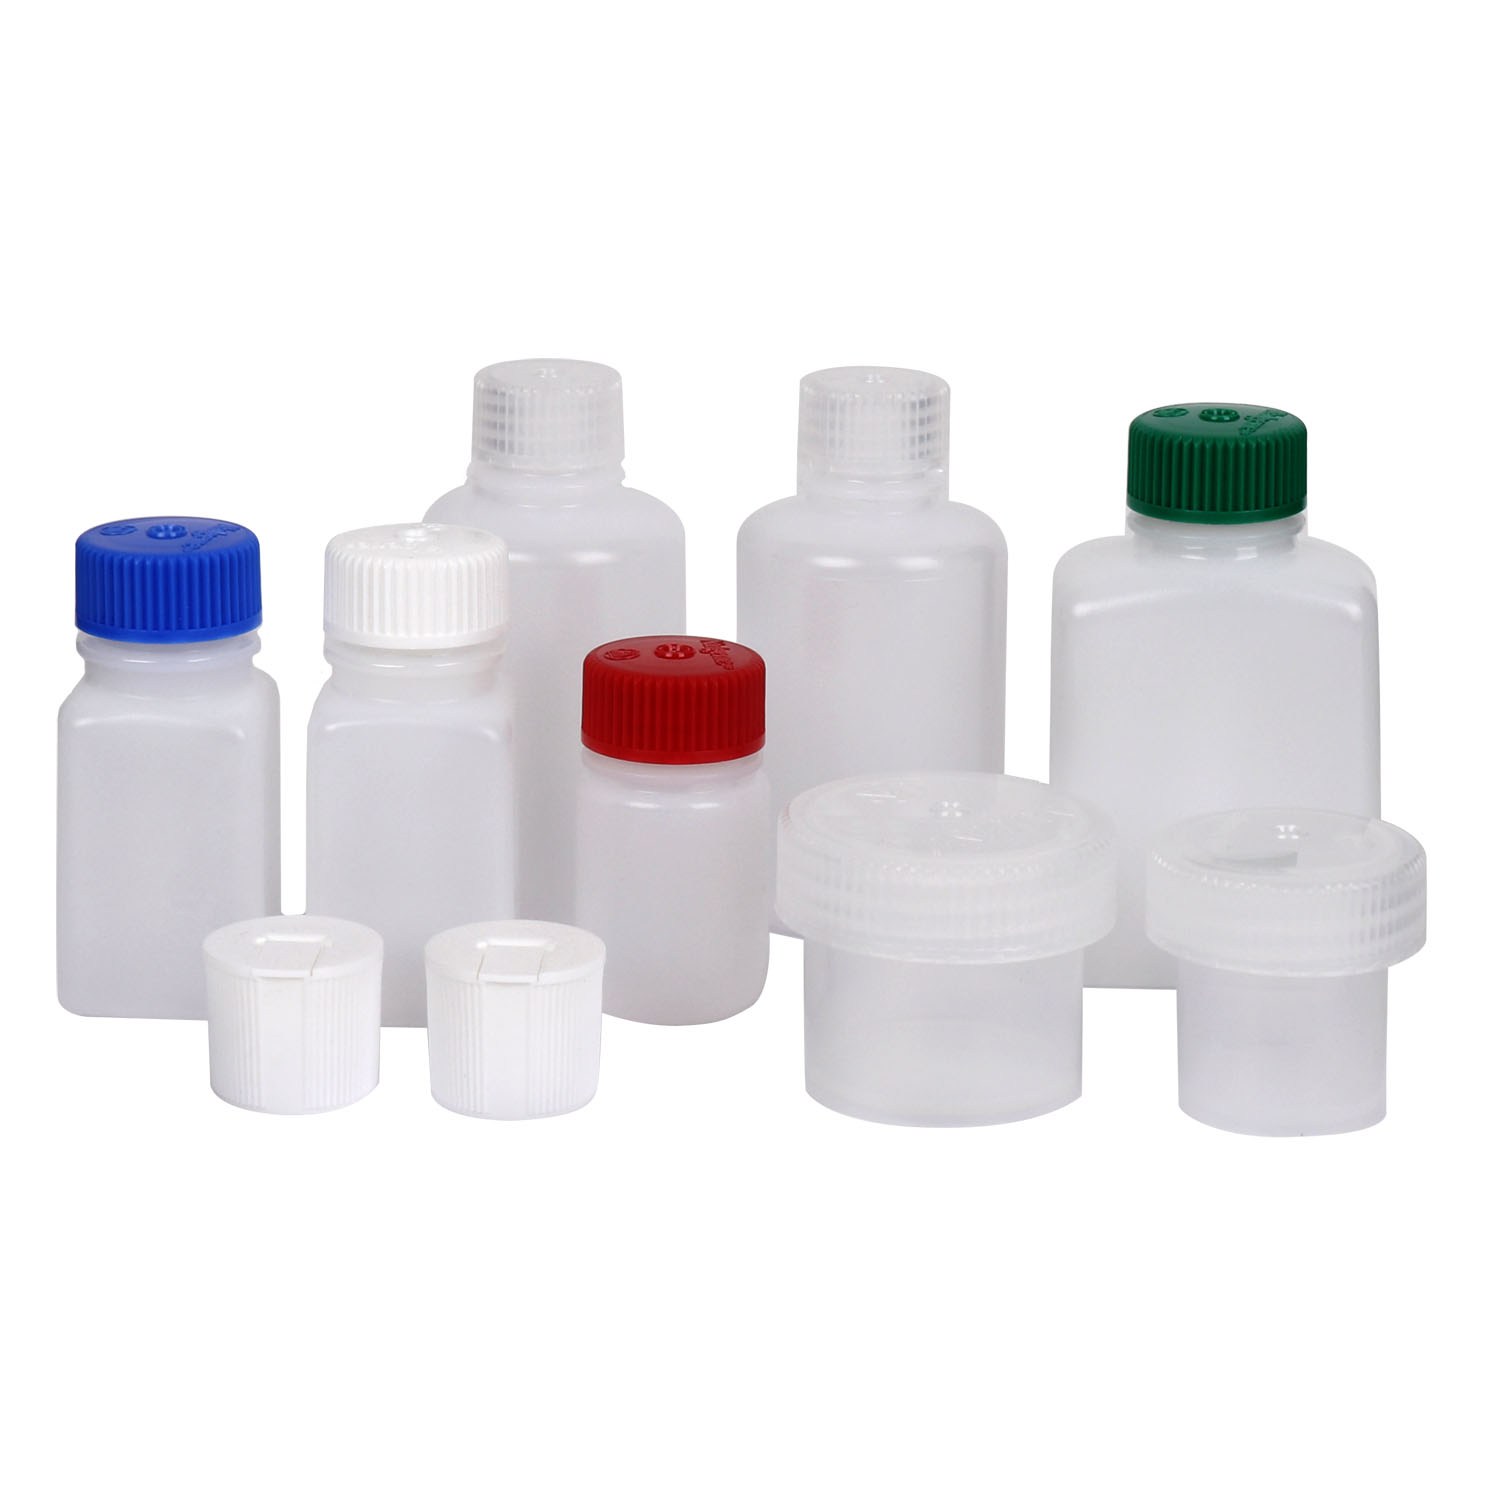 Productfoto van Nalgene Set of Cans - 8 Parts - Empty Bottles